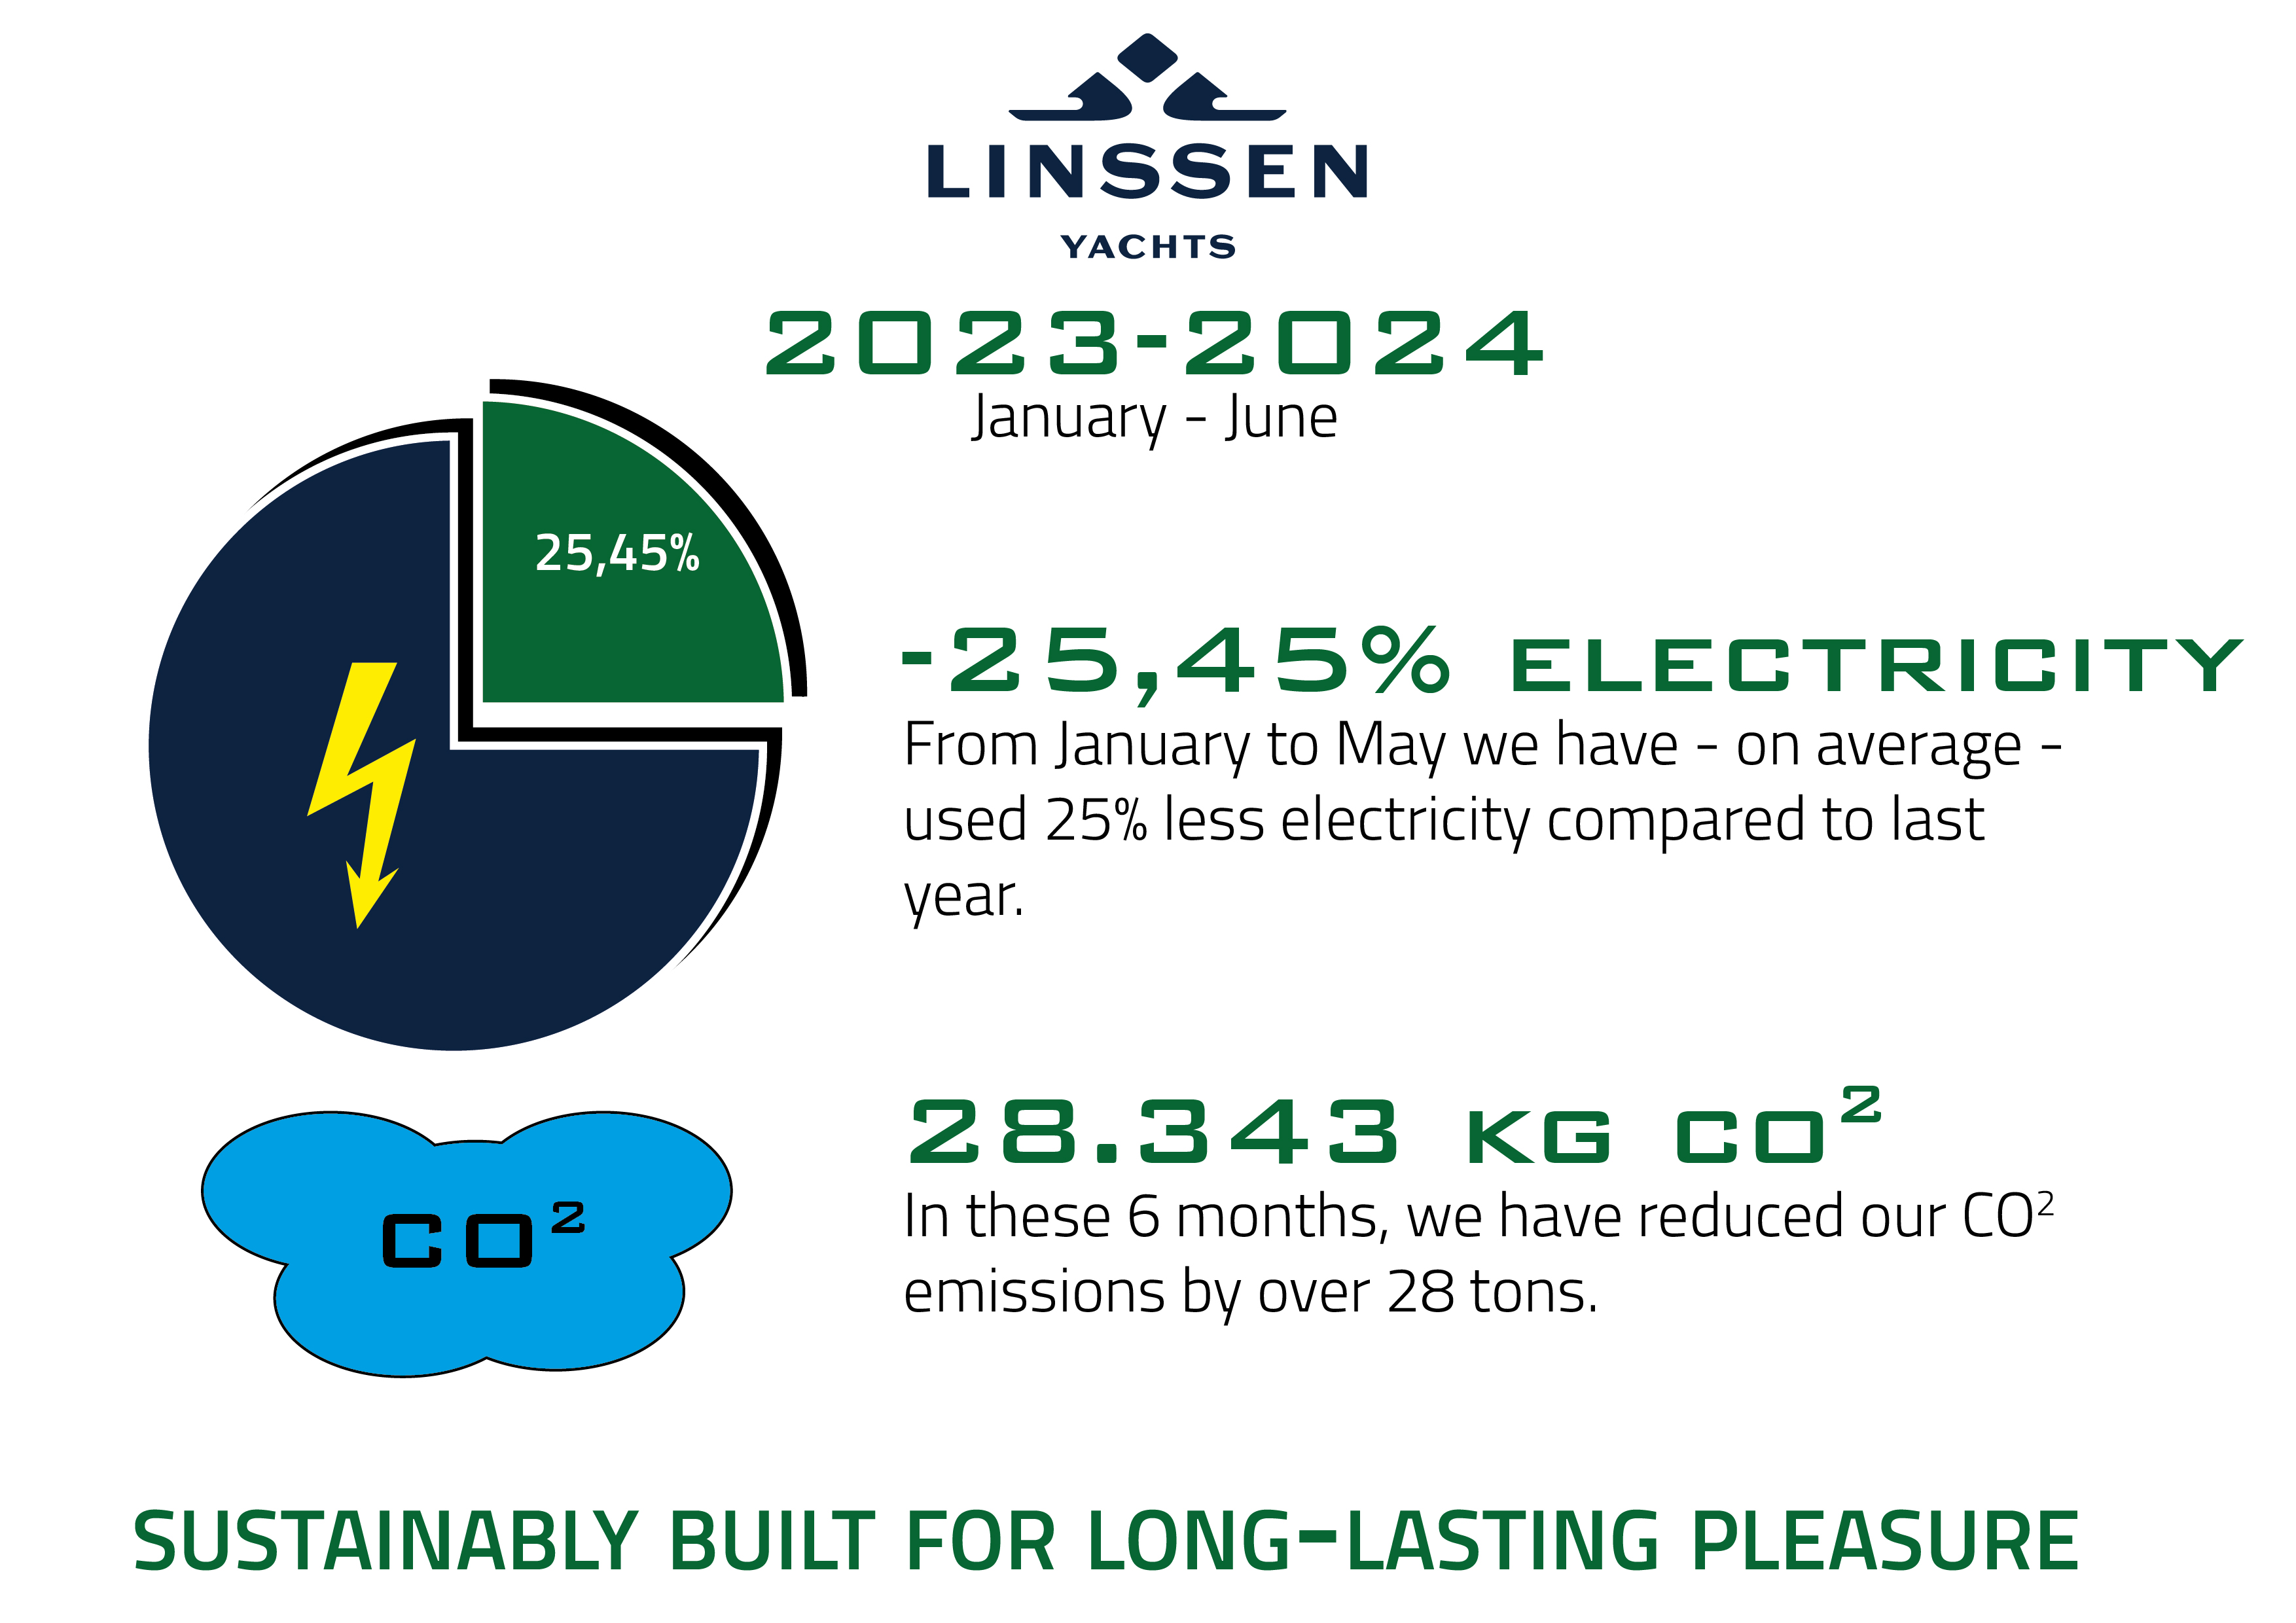 Linssen Yachts verbraucht im ersten Halbjahr 2024 25% weniger Strom als 2023